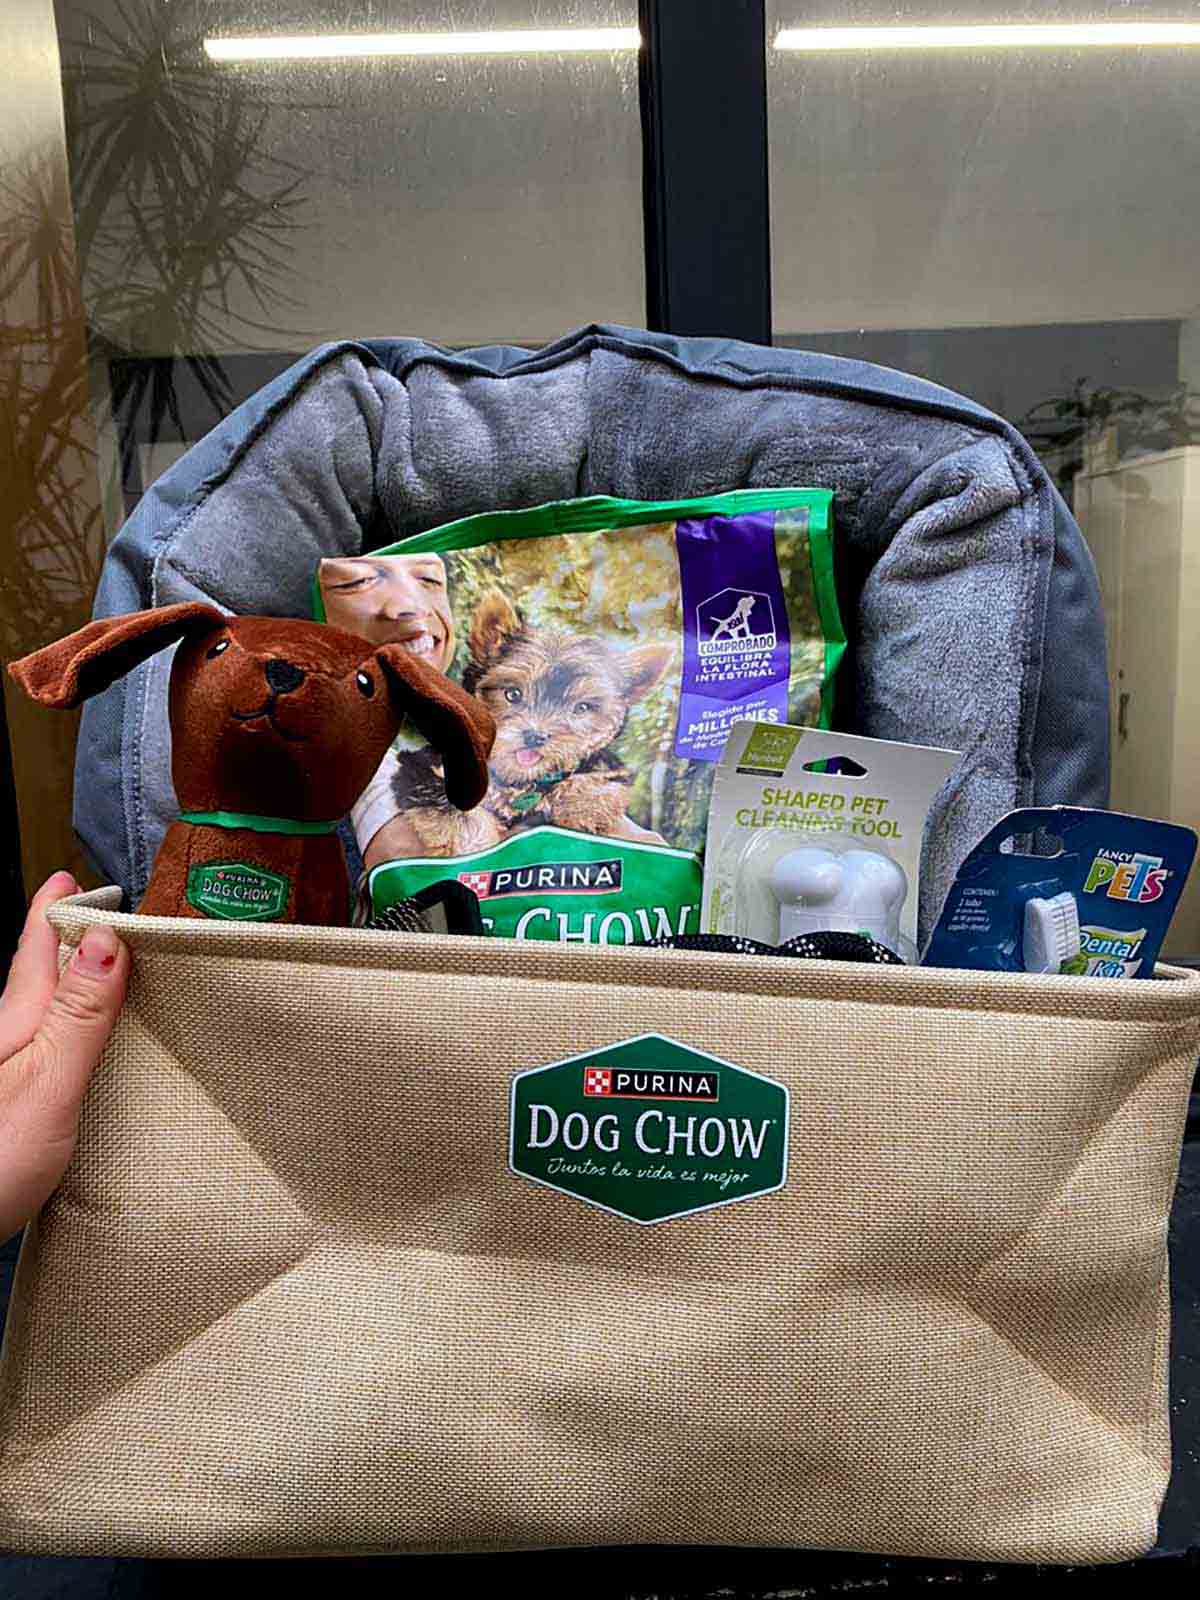 Dog Chow Gran Comienzo el alimento ideal para el desarrollo saludable de tu cachorro desde el primer día